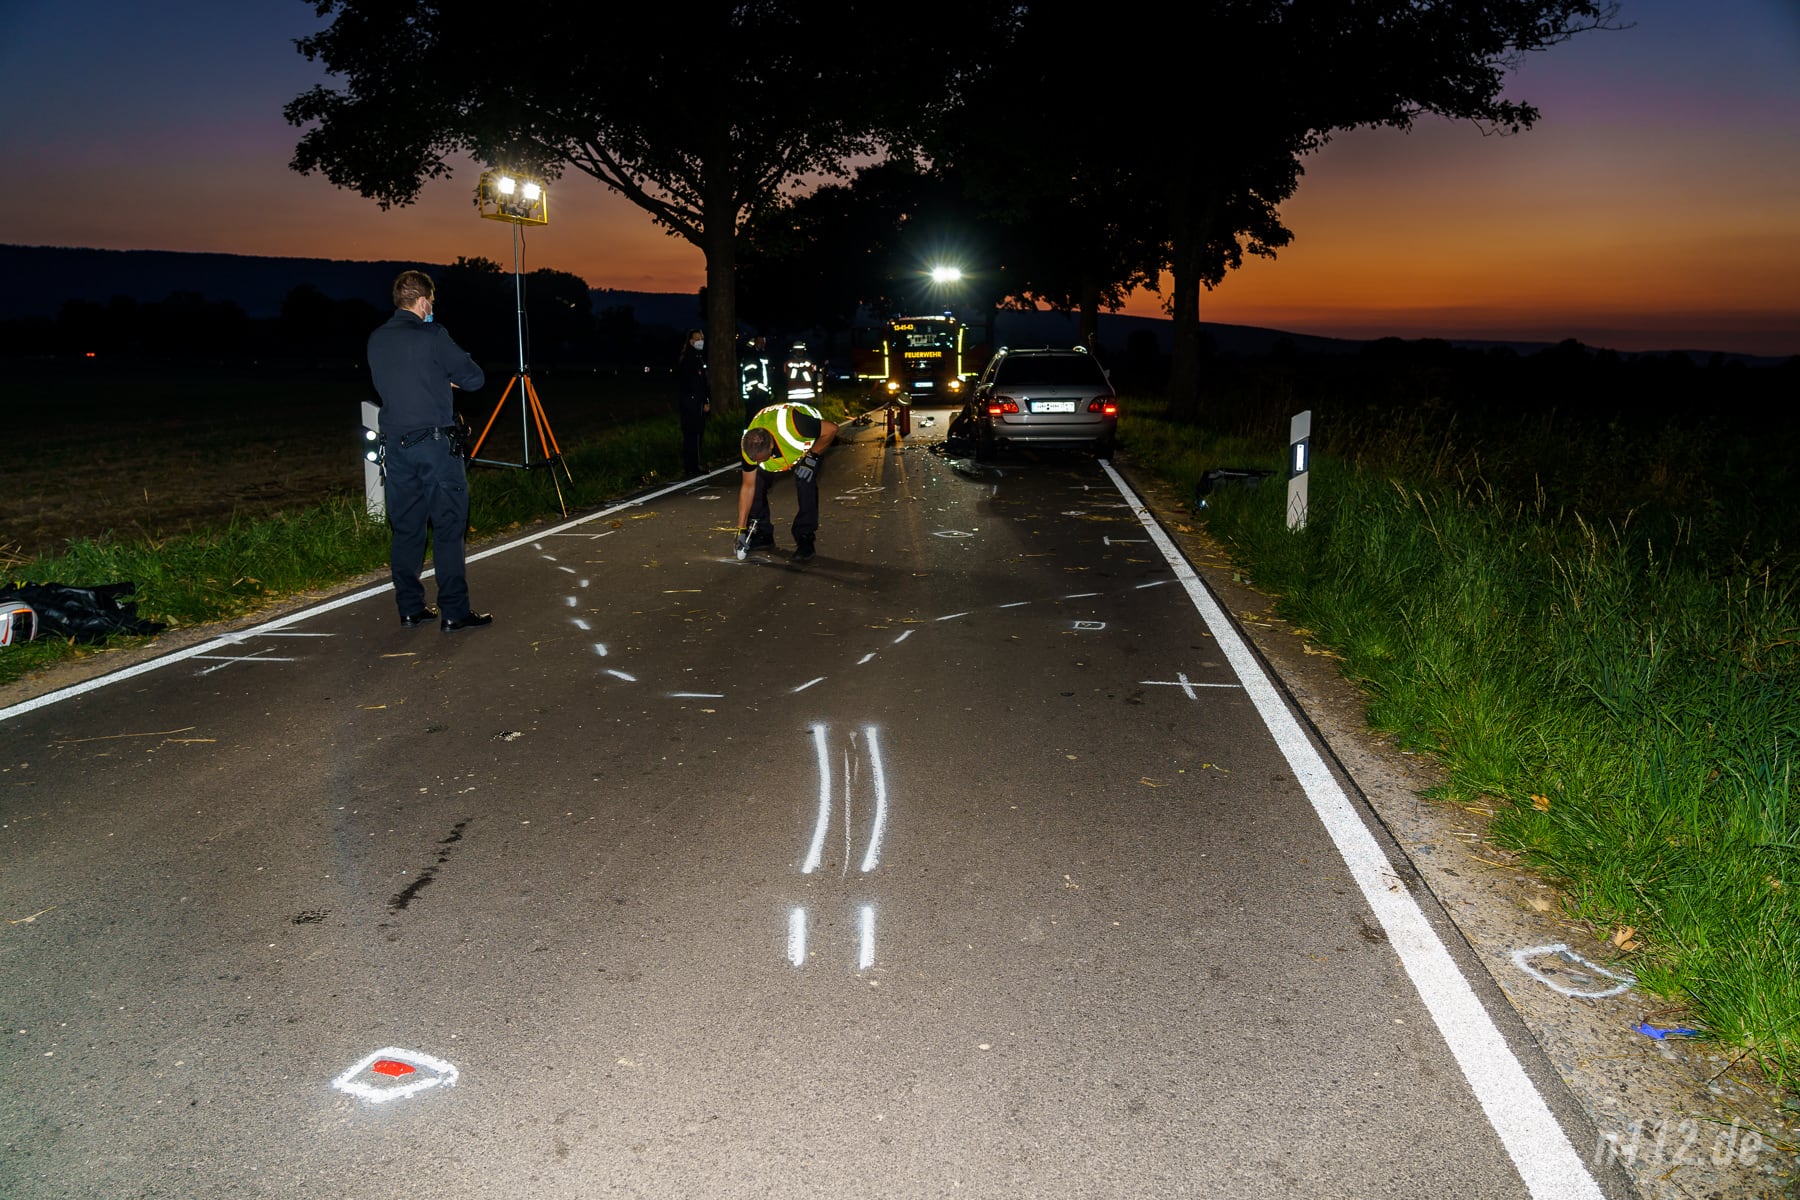 Der Unfallermittler sammelt am ausgeleuchteten Unfallort alle Spuren, die er noch finden kann (Foto: n112.de/Stefan Hillen)